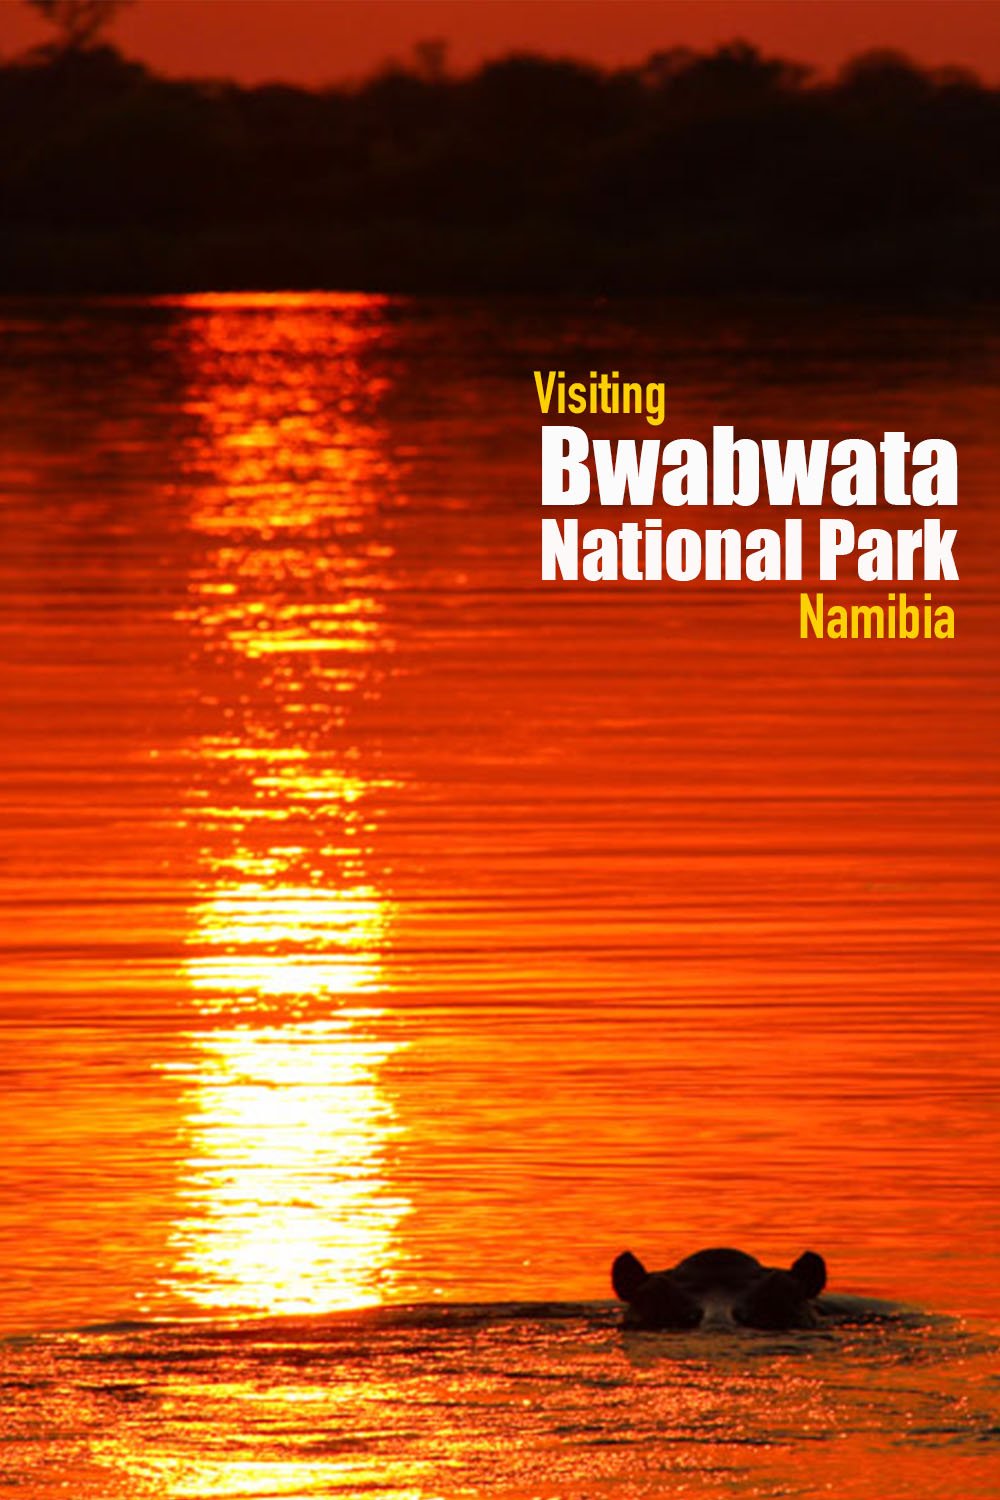 Visiting Bwabwata National Park, Namibia